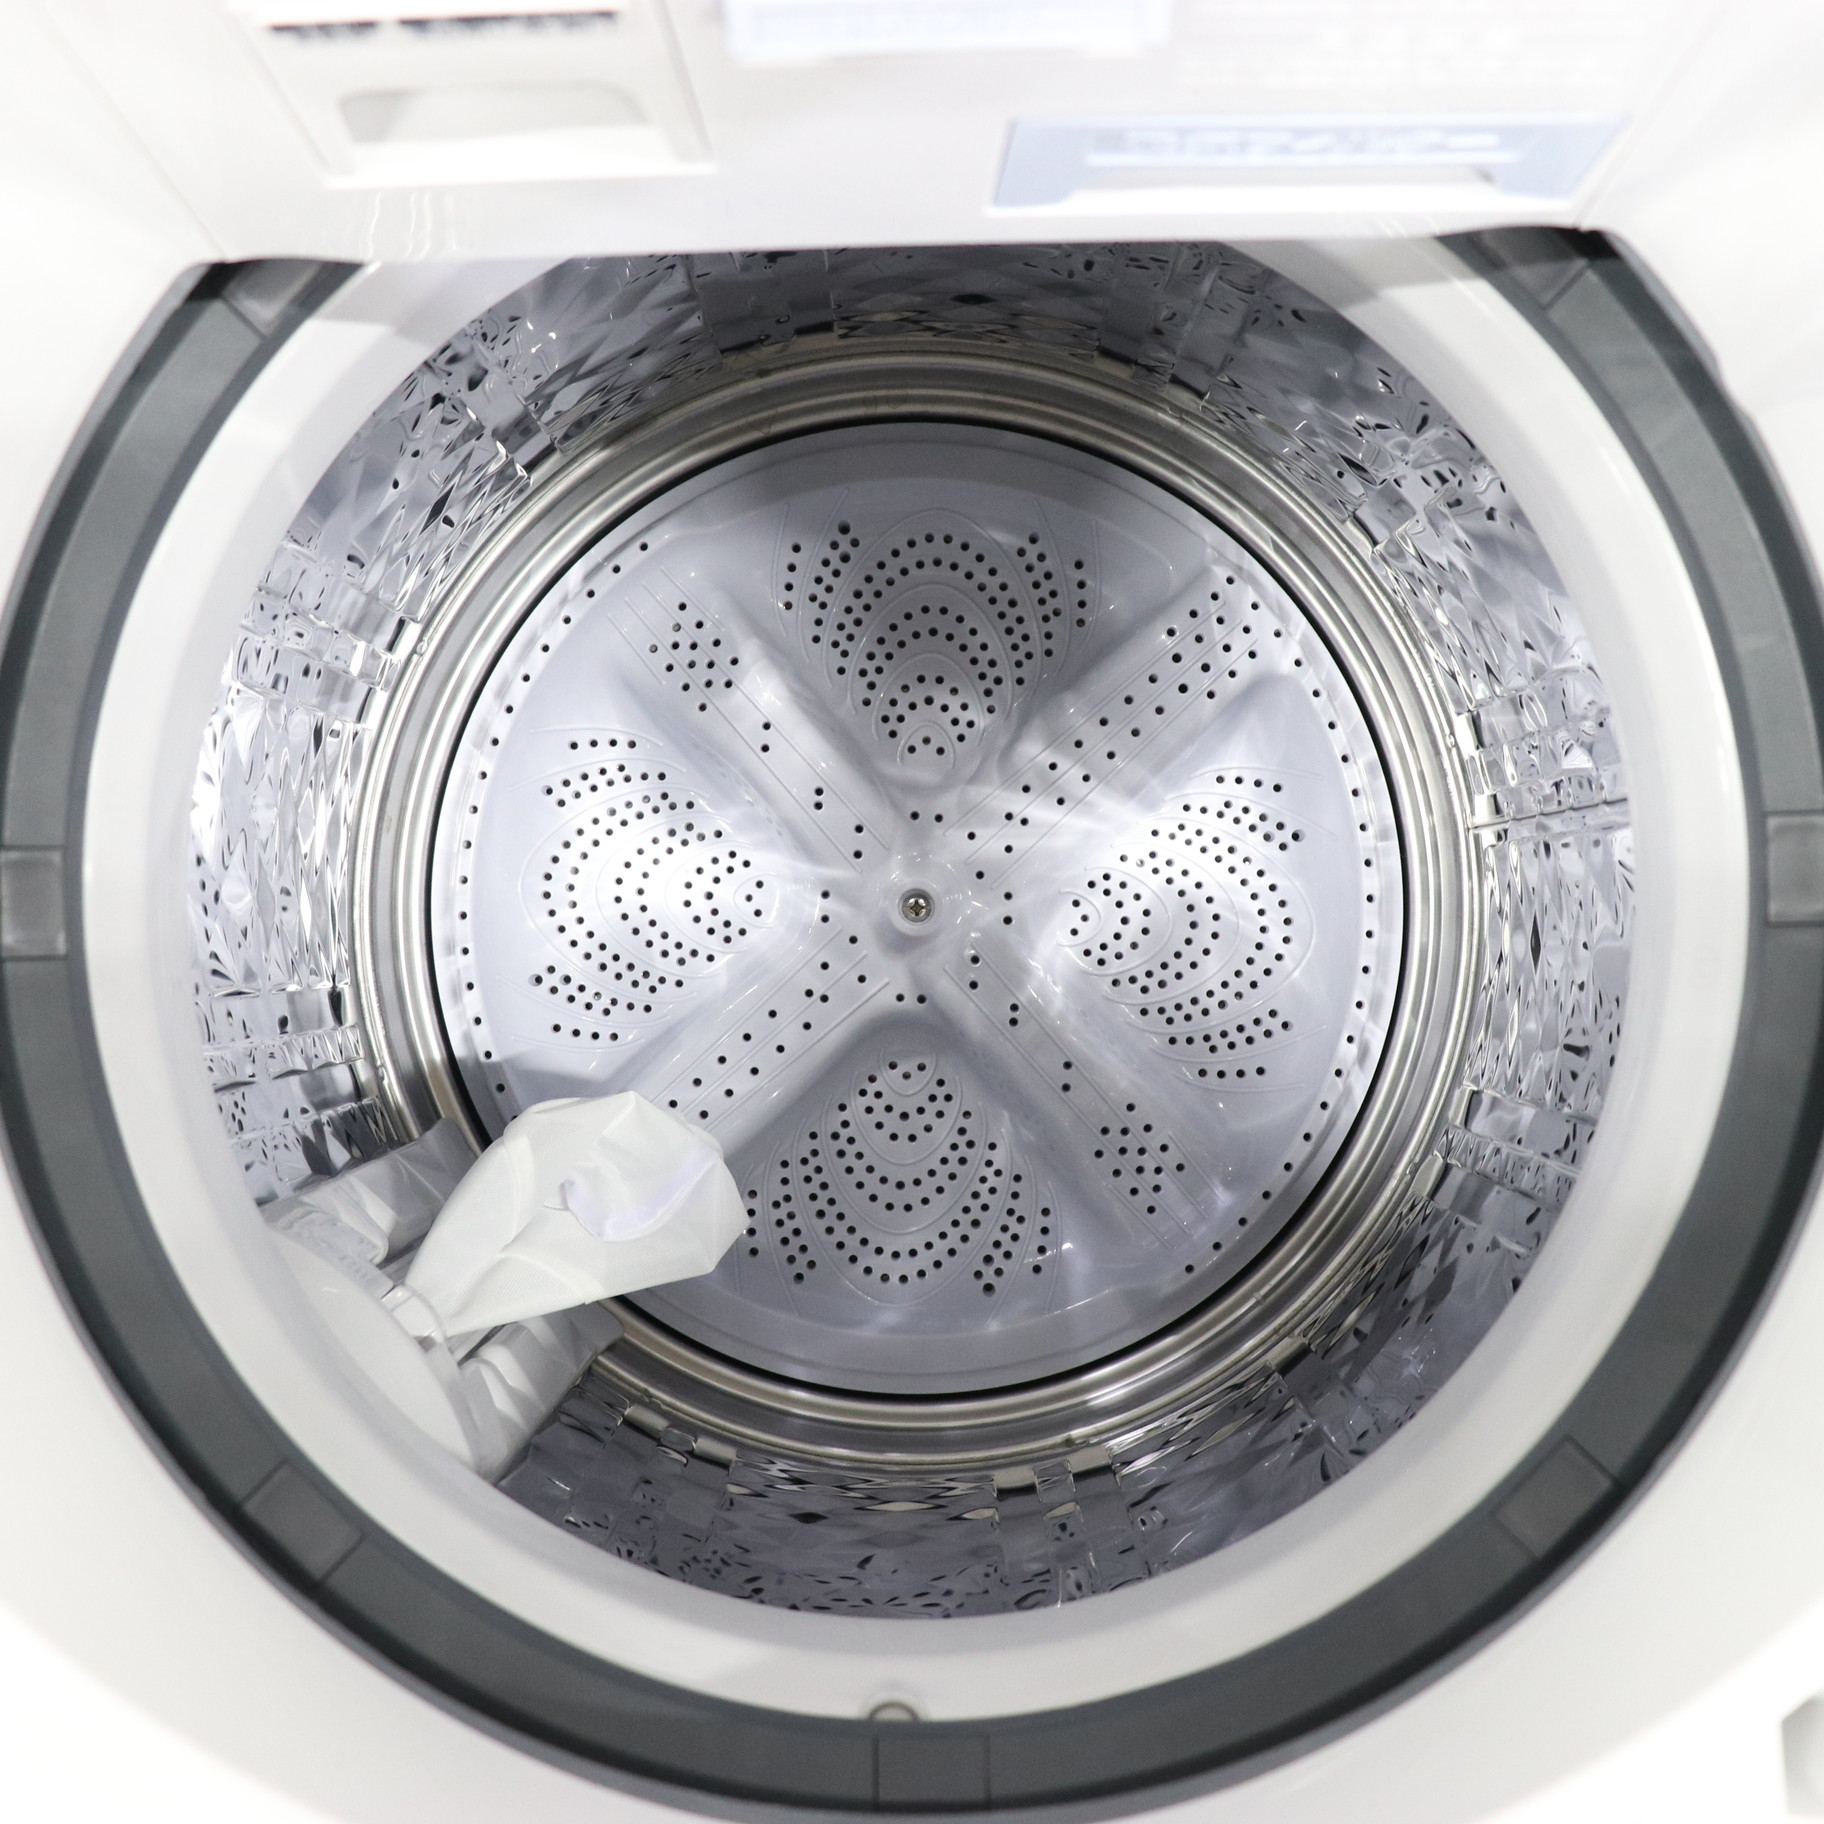 〔展示品〕 縦型乾燥洗濯機 ホワイト系 ES-TX8H-W ［洗濯8.0kg ／乾燥4.5kg ／ヒーター乾燥(排気タイプ) ／上開き］